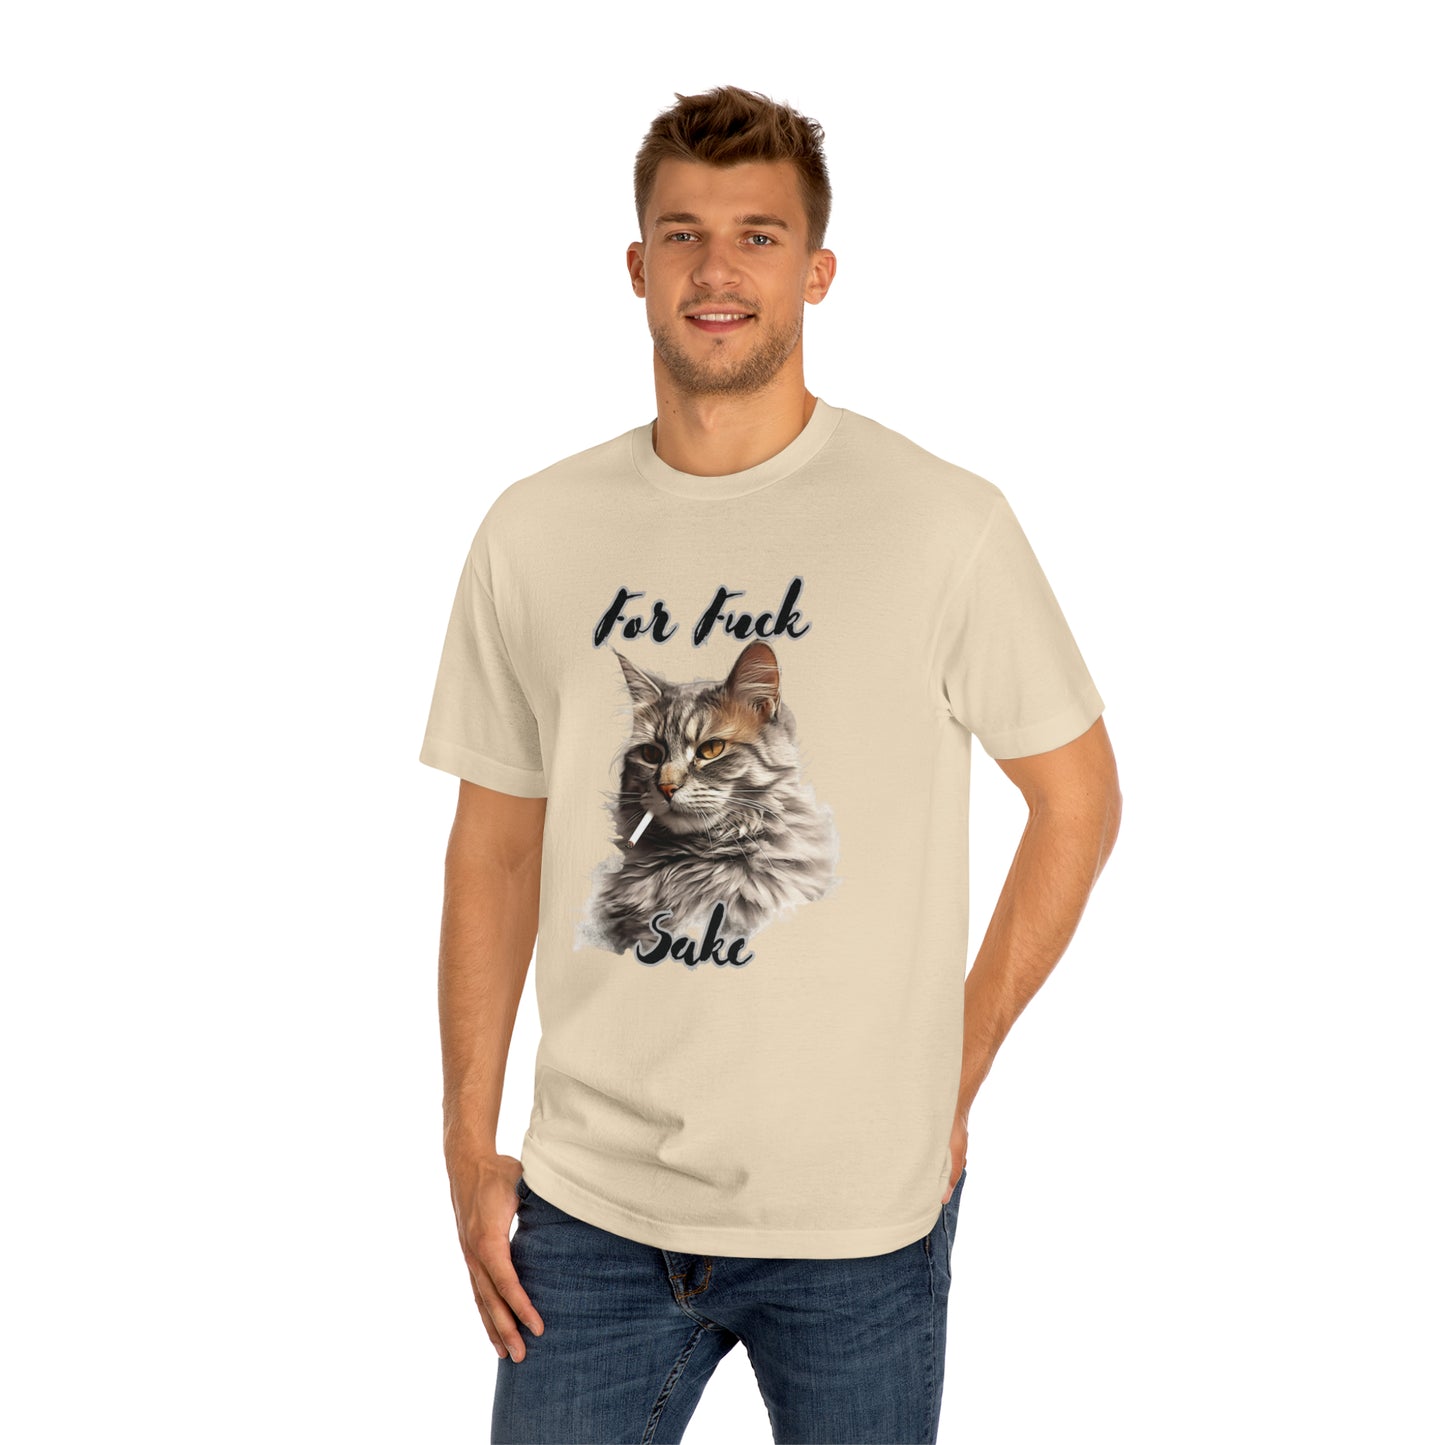 For Feline's Sake: Funny 'For Fuck Sake' Shirt - Perfect Gift for Cat Lovers T-Shirt   